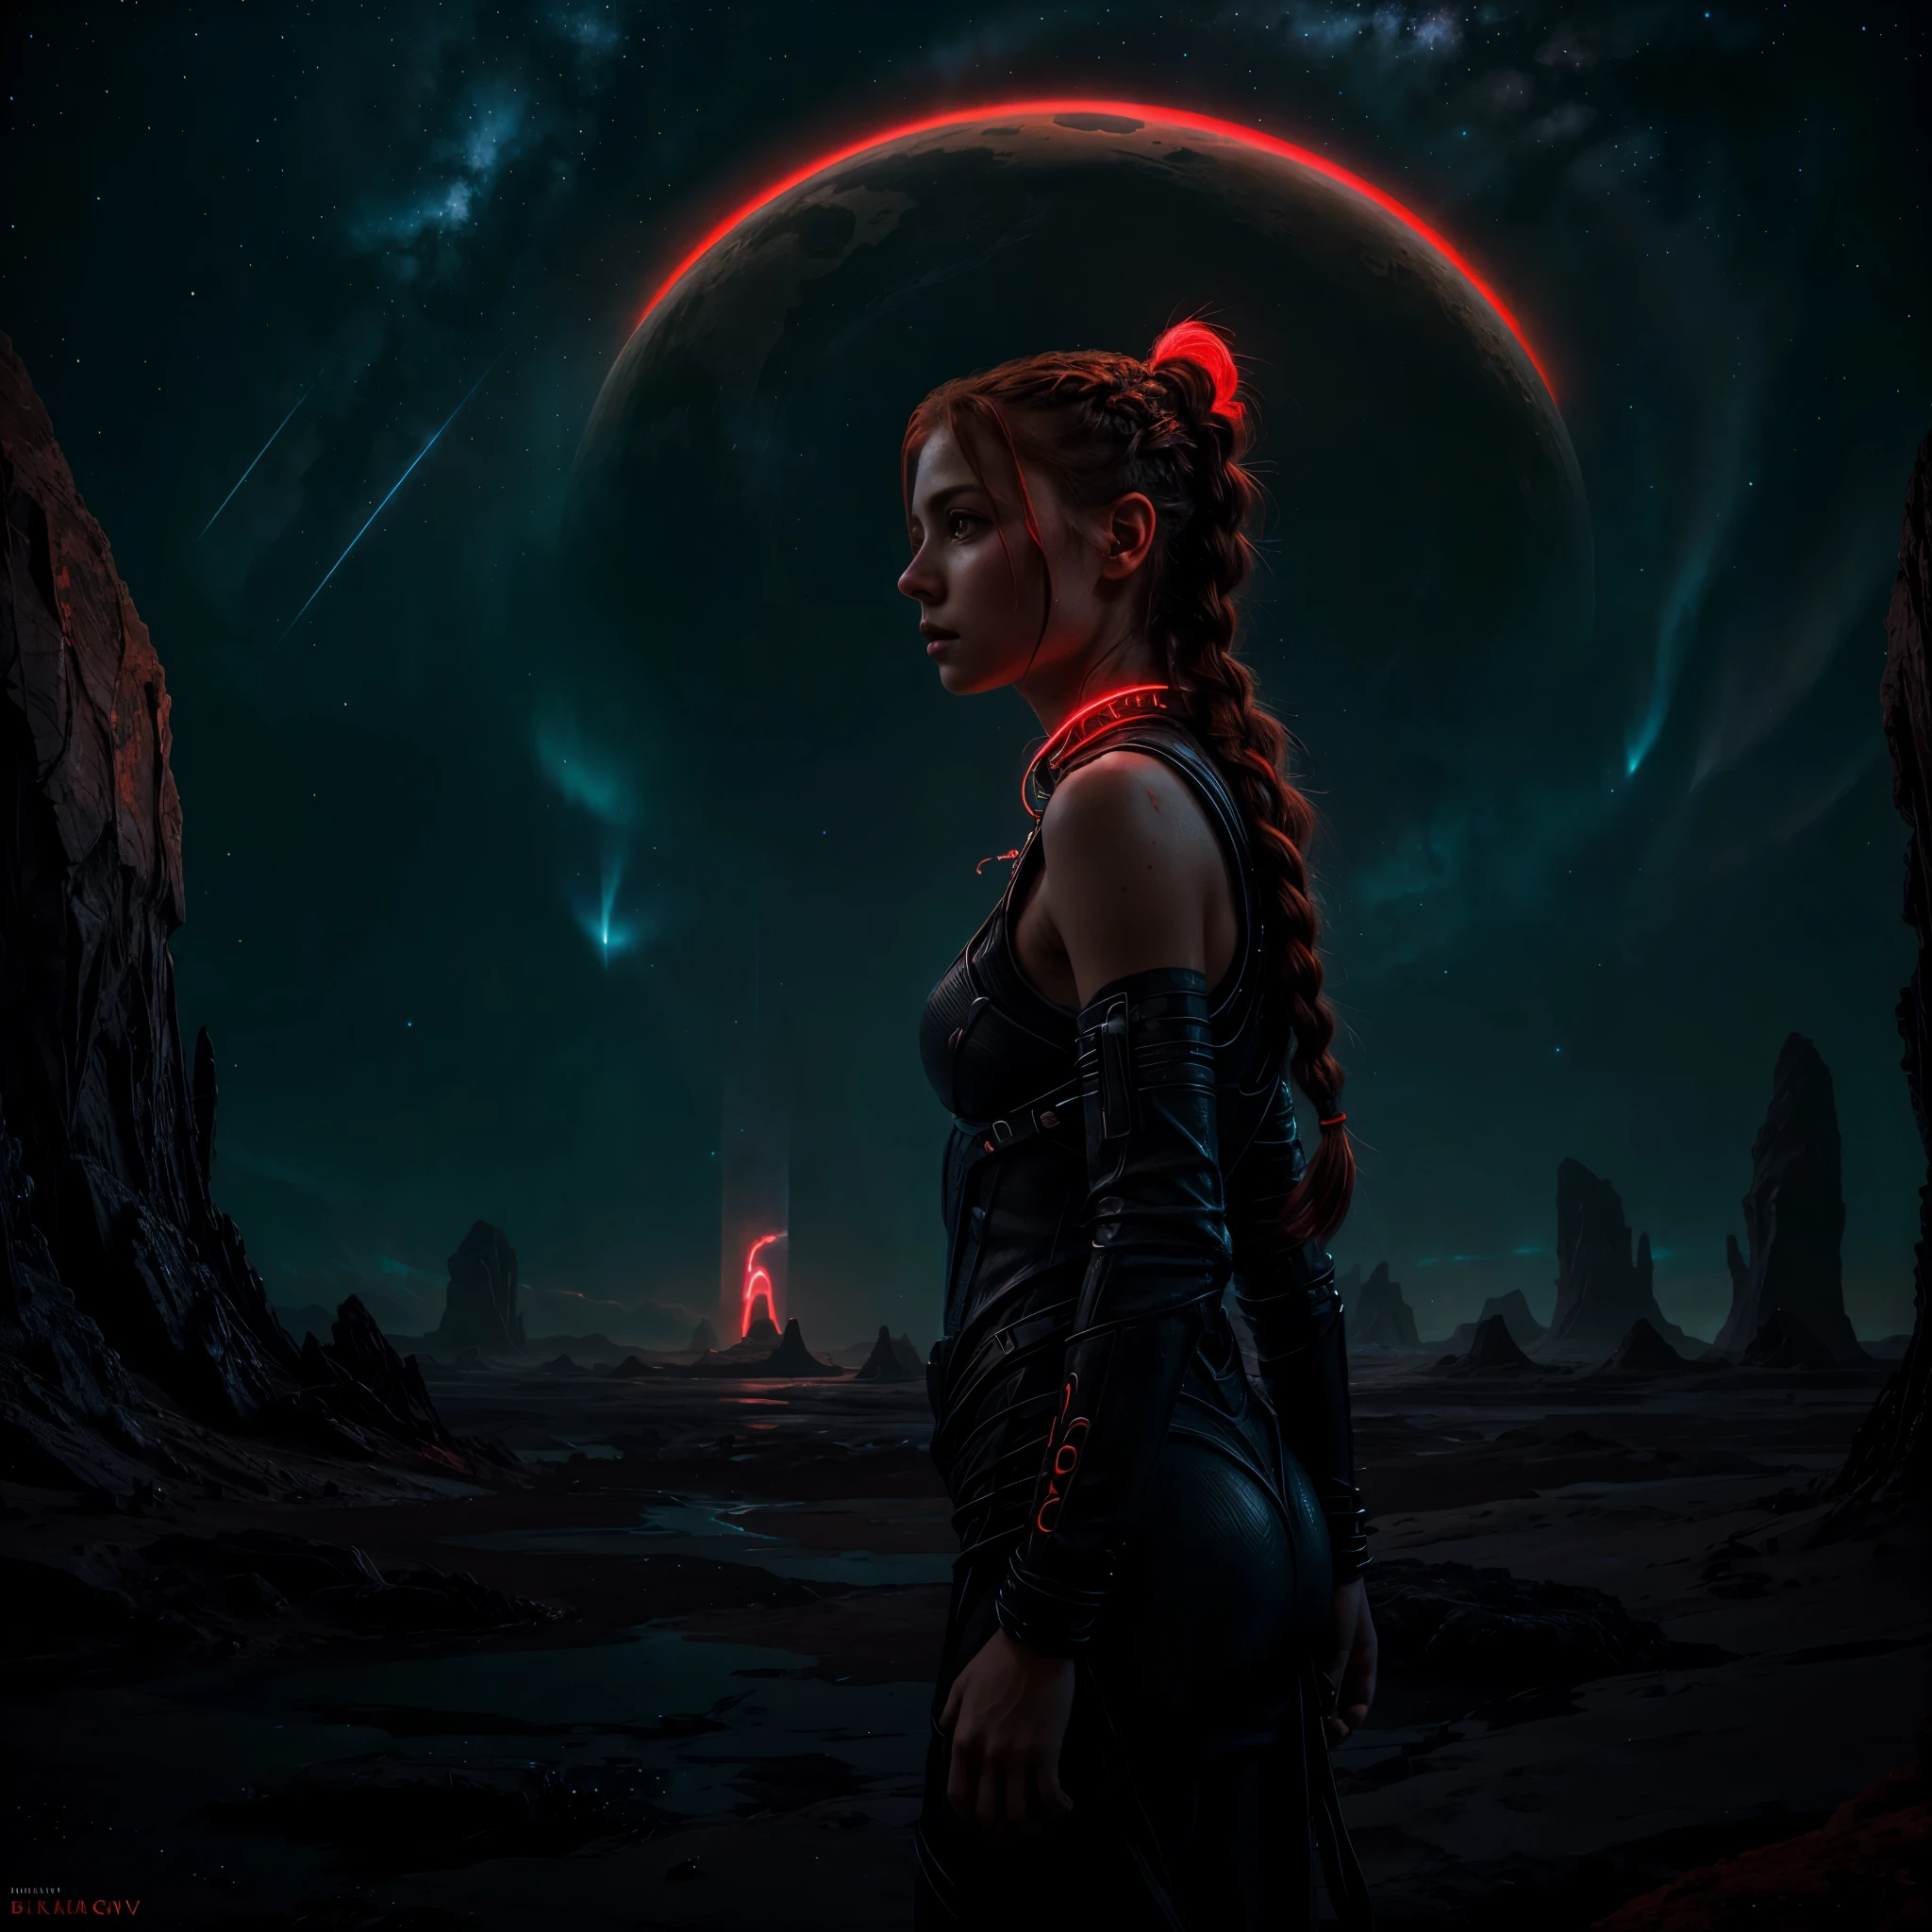 portrait d&#39;une belle fille, debout seul dans l&#39;étendue d&#39;un paysage extraterrestre, sa tresse rouge tombant en cascade sur ses épaules alors qu&#39;elle scrute l&#39;horizon lumineux et bioluminescent,